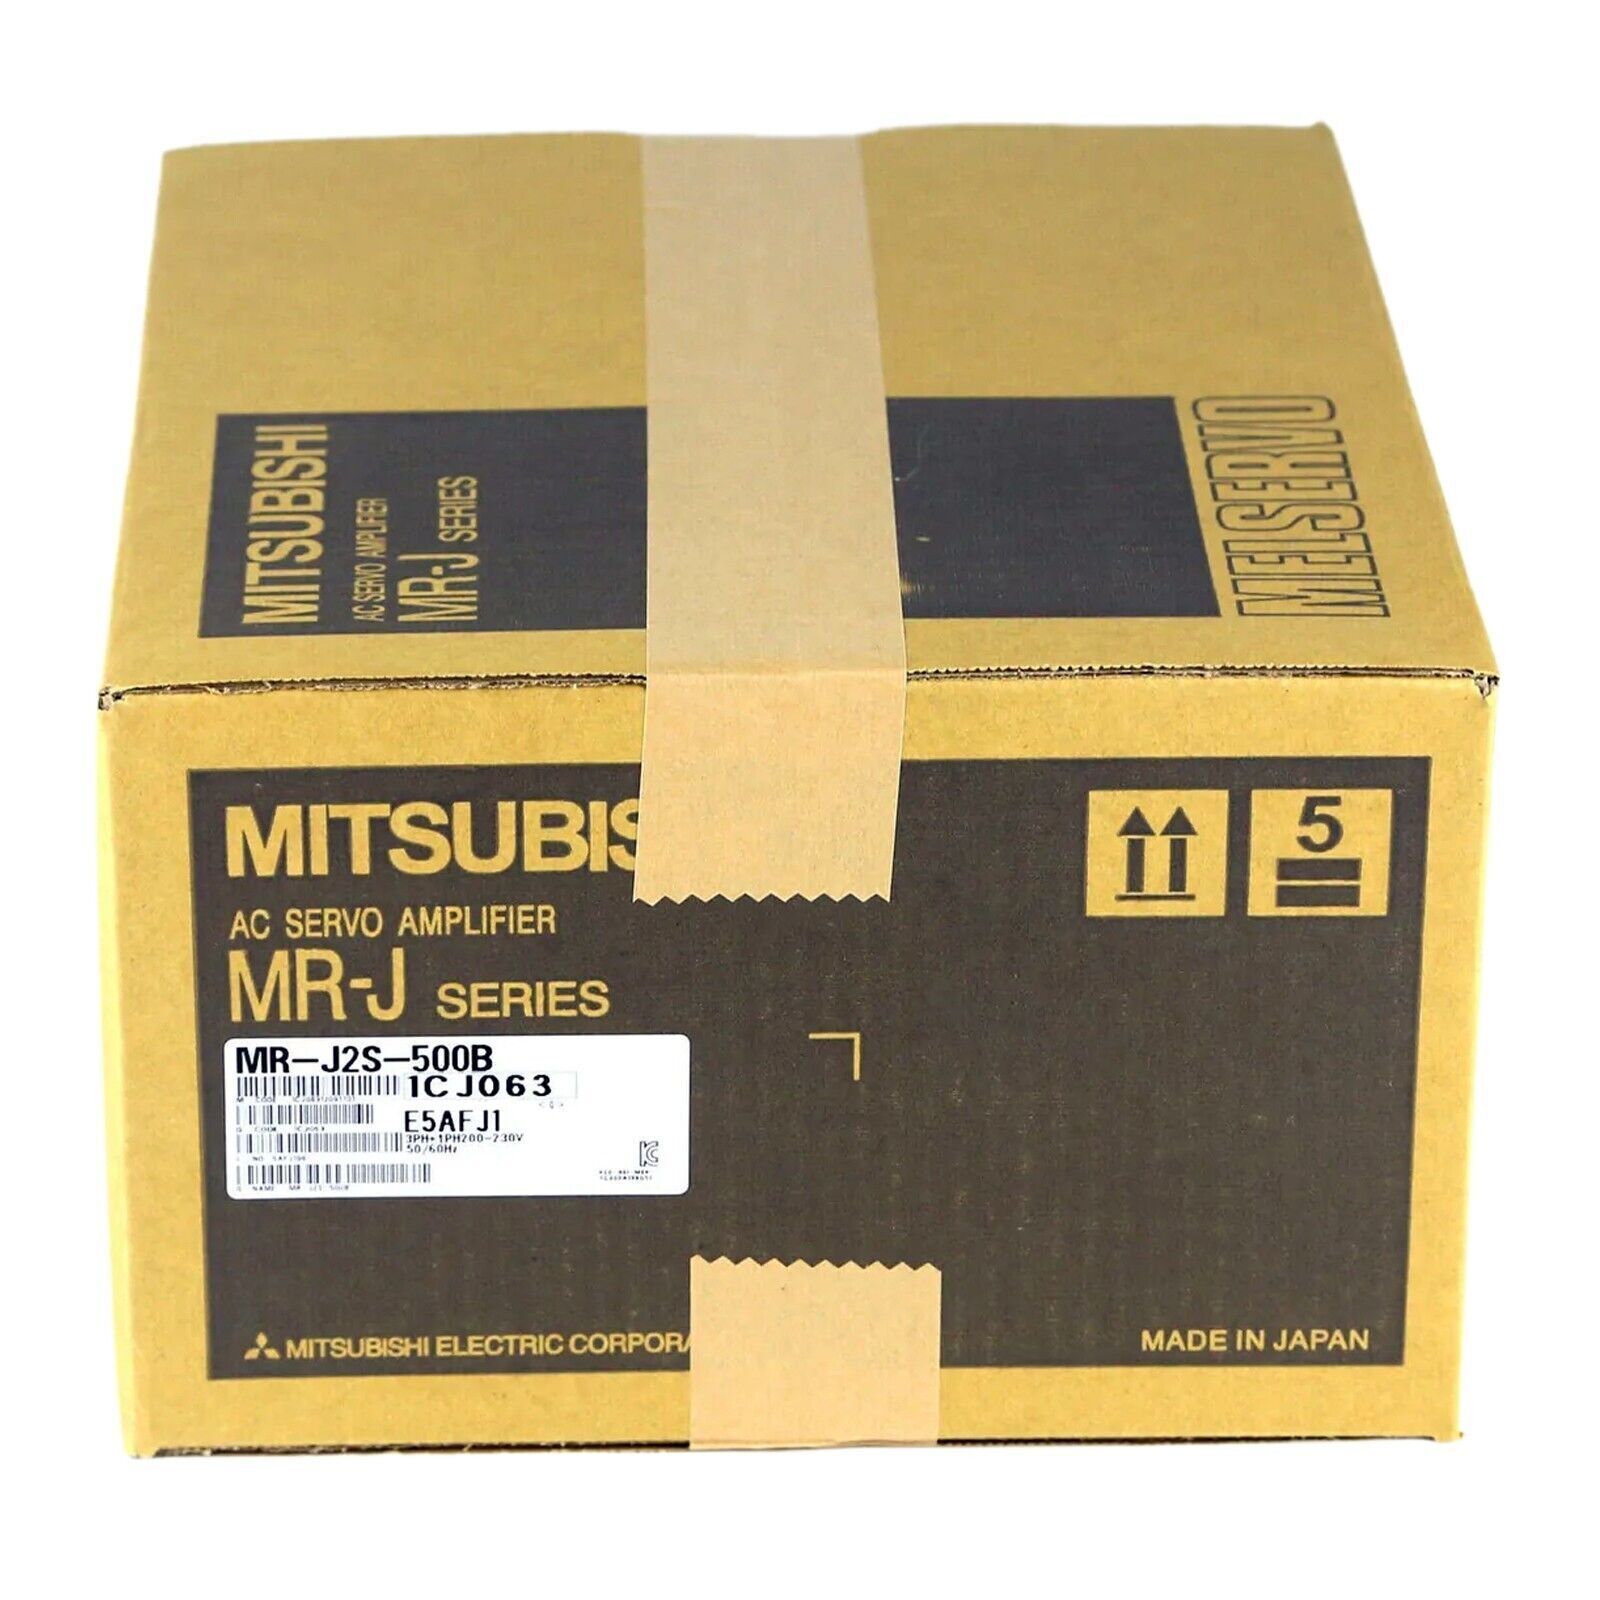 MR-J2S-500B 1PCS NEW Mitsubishi Servo Drive MR-J2S-500B